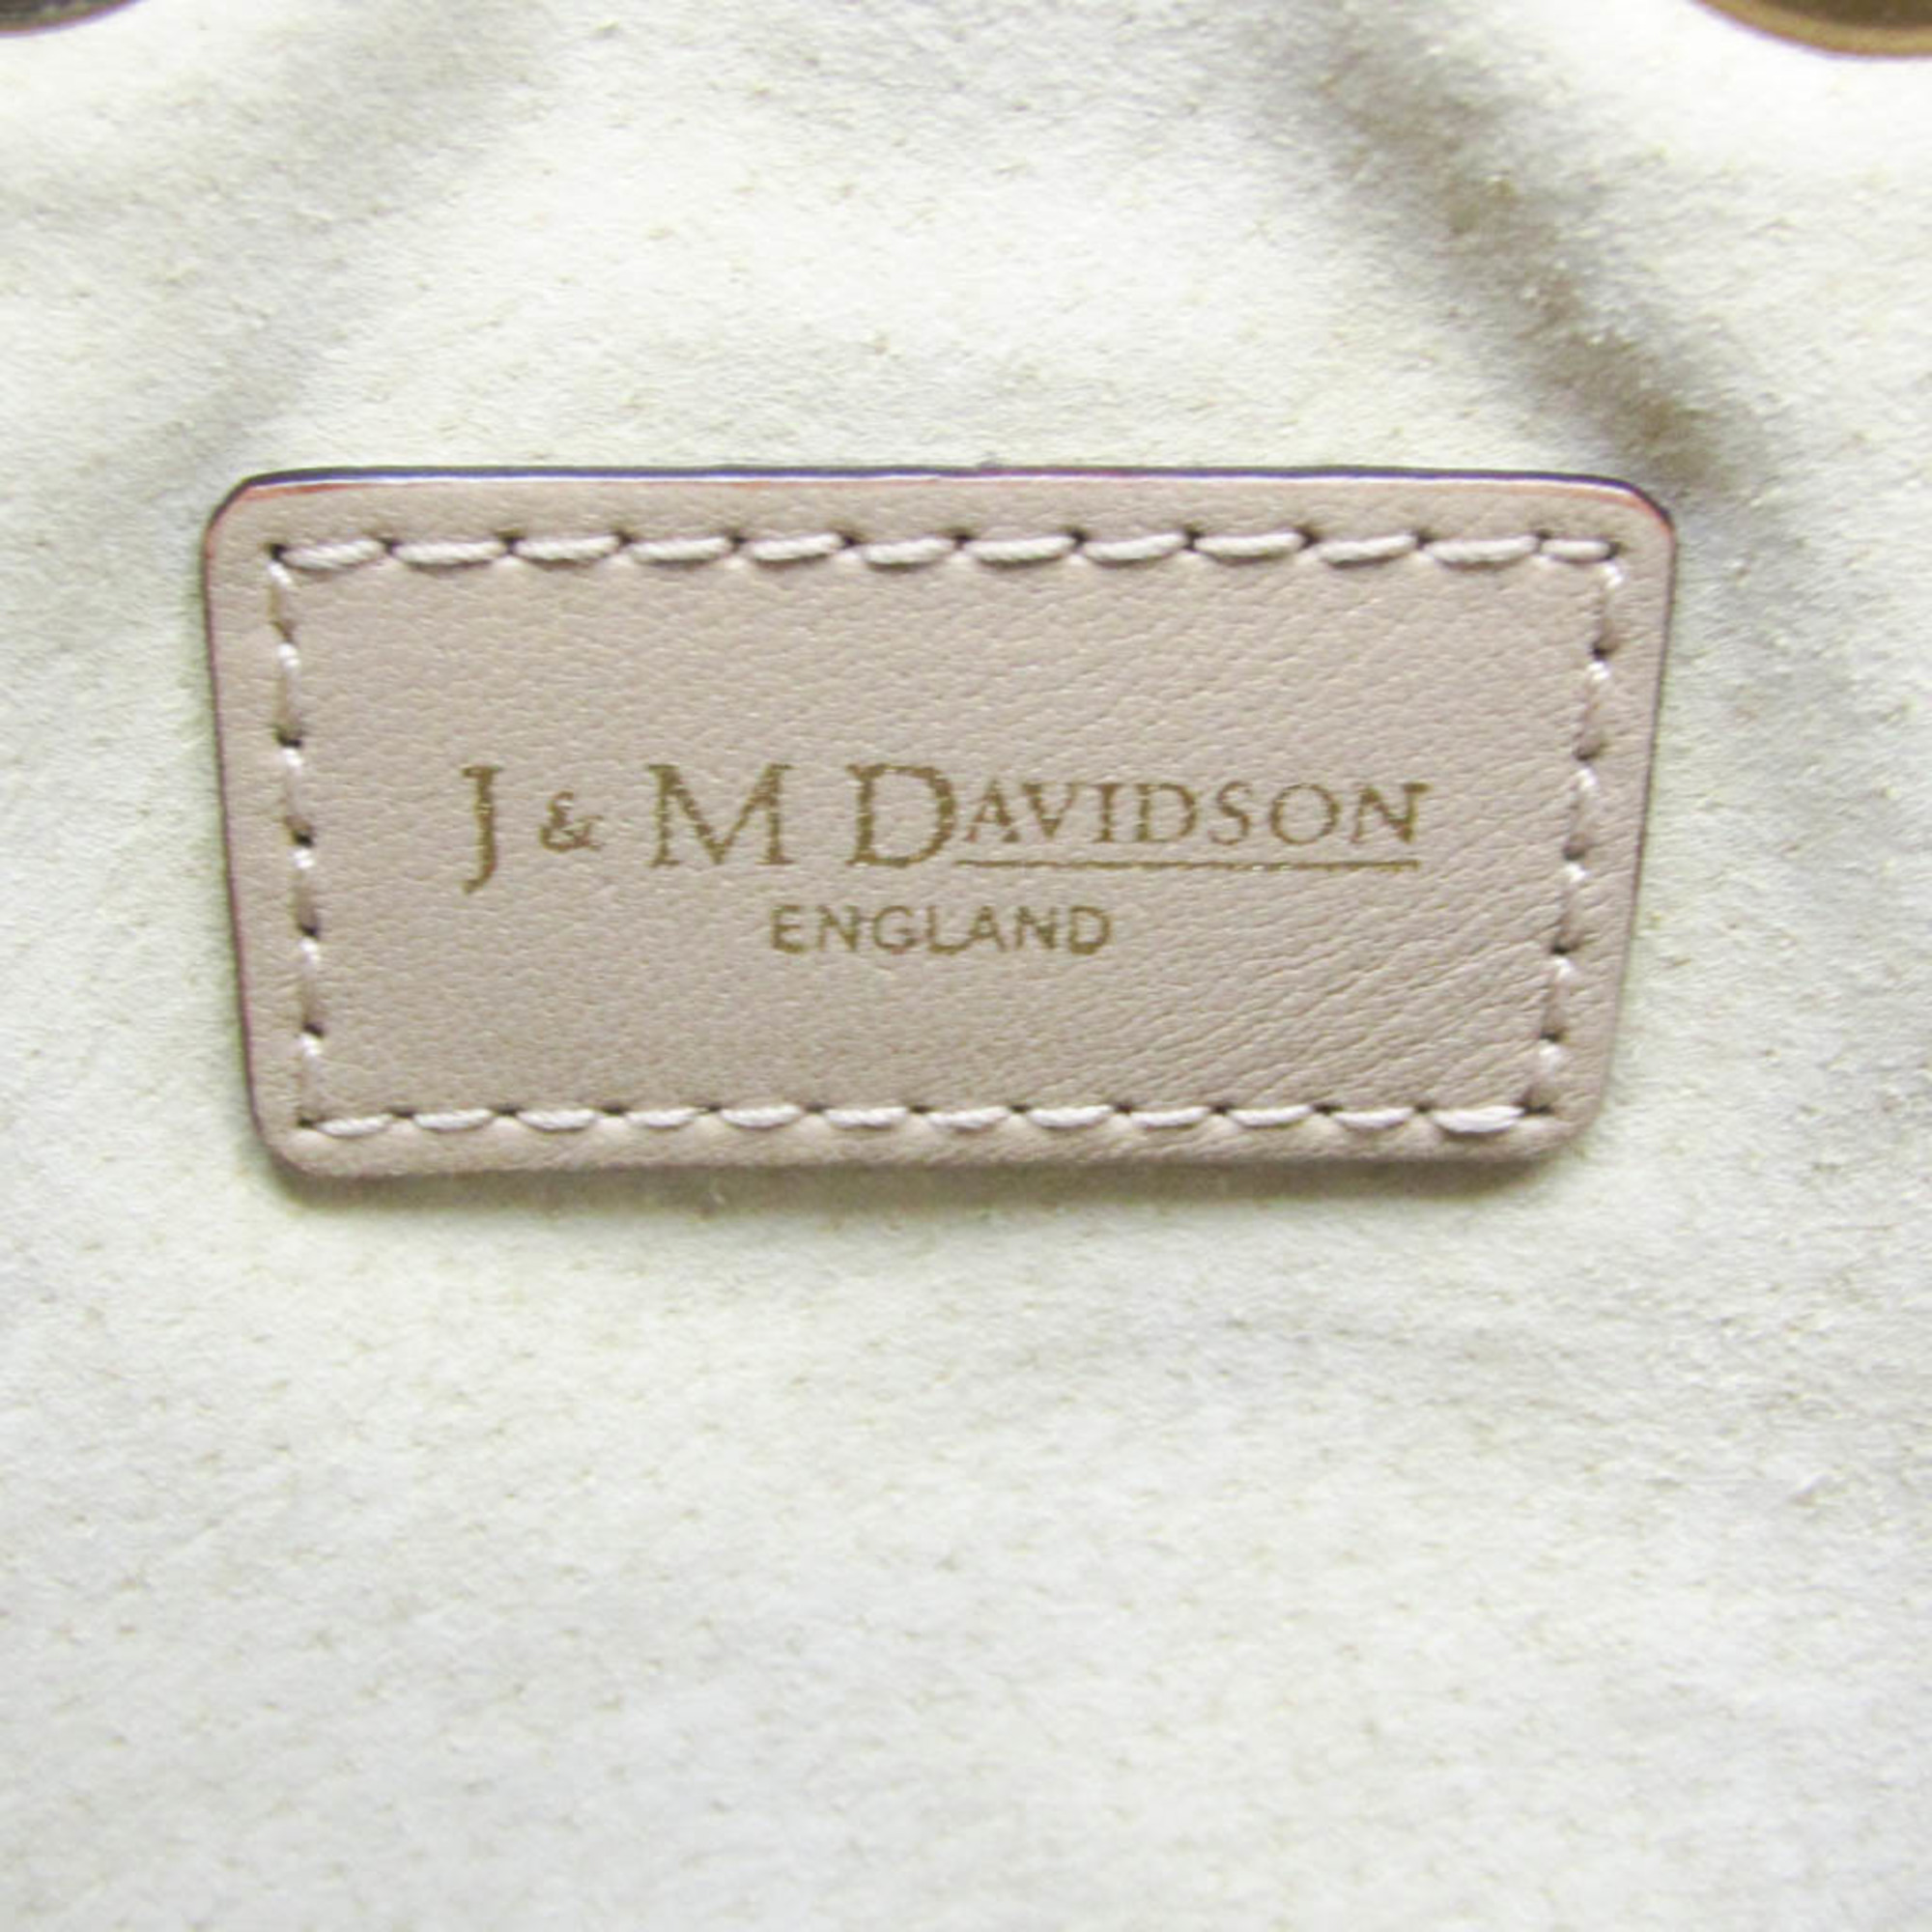 J&M Davidson Carnival Women's Leather,Suede Shoulder Bag Beige